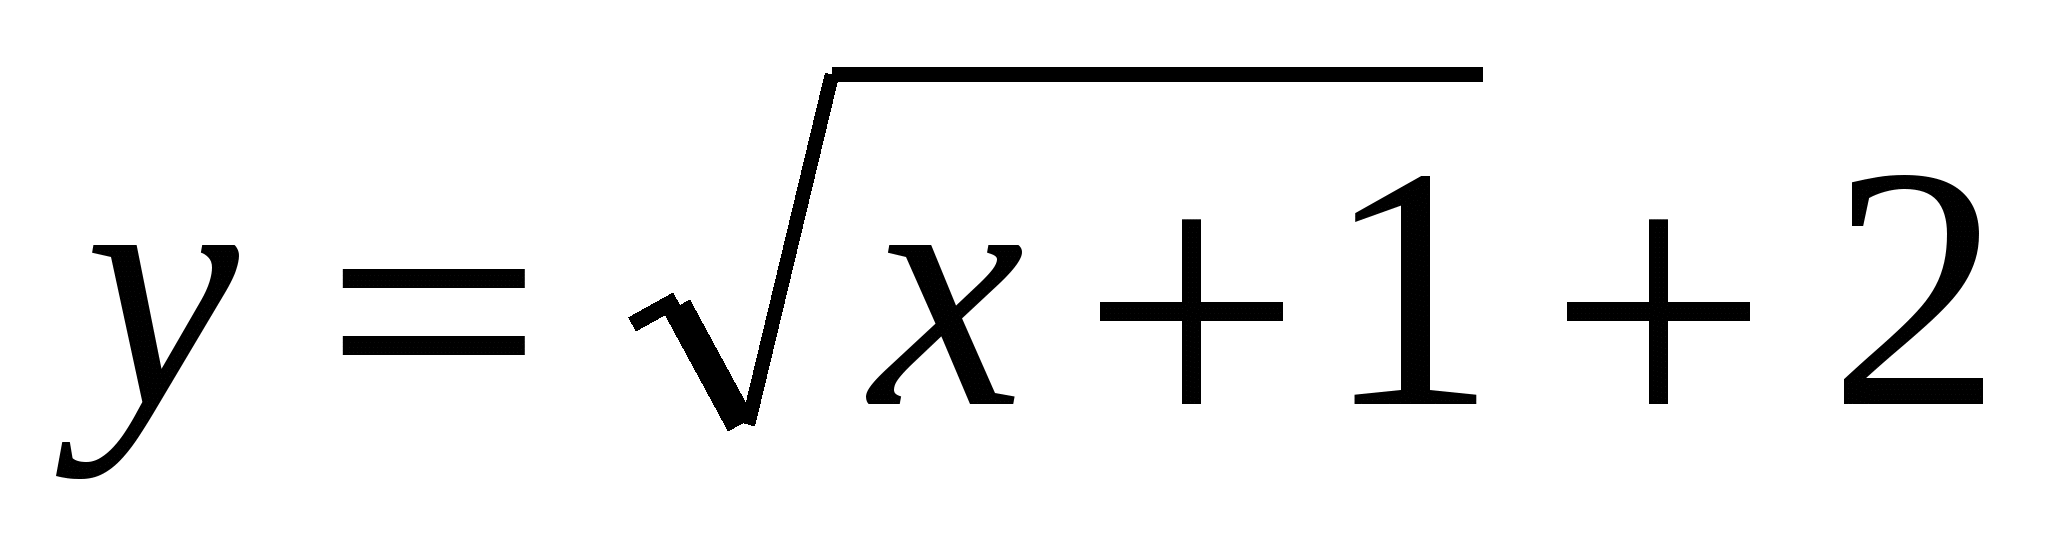 Модульная технология. Практический модуль Функции корень n-ой степени , их свойства и графики по теме Степени и корни. Степенные функции. (Алгебра 11 класс.)